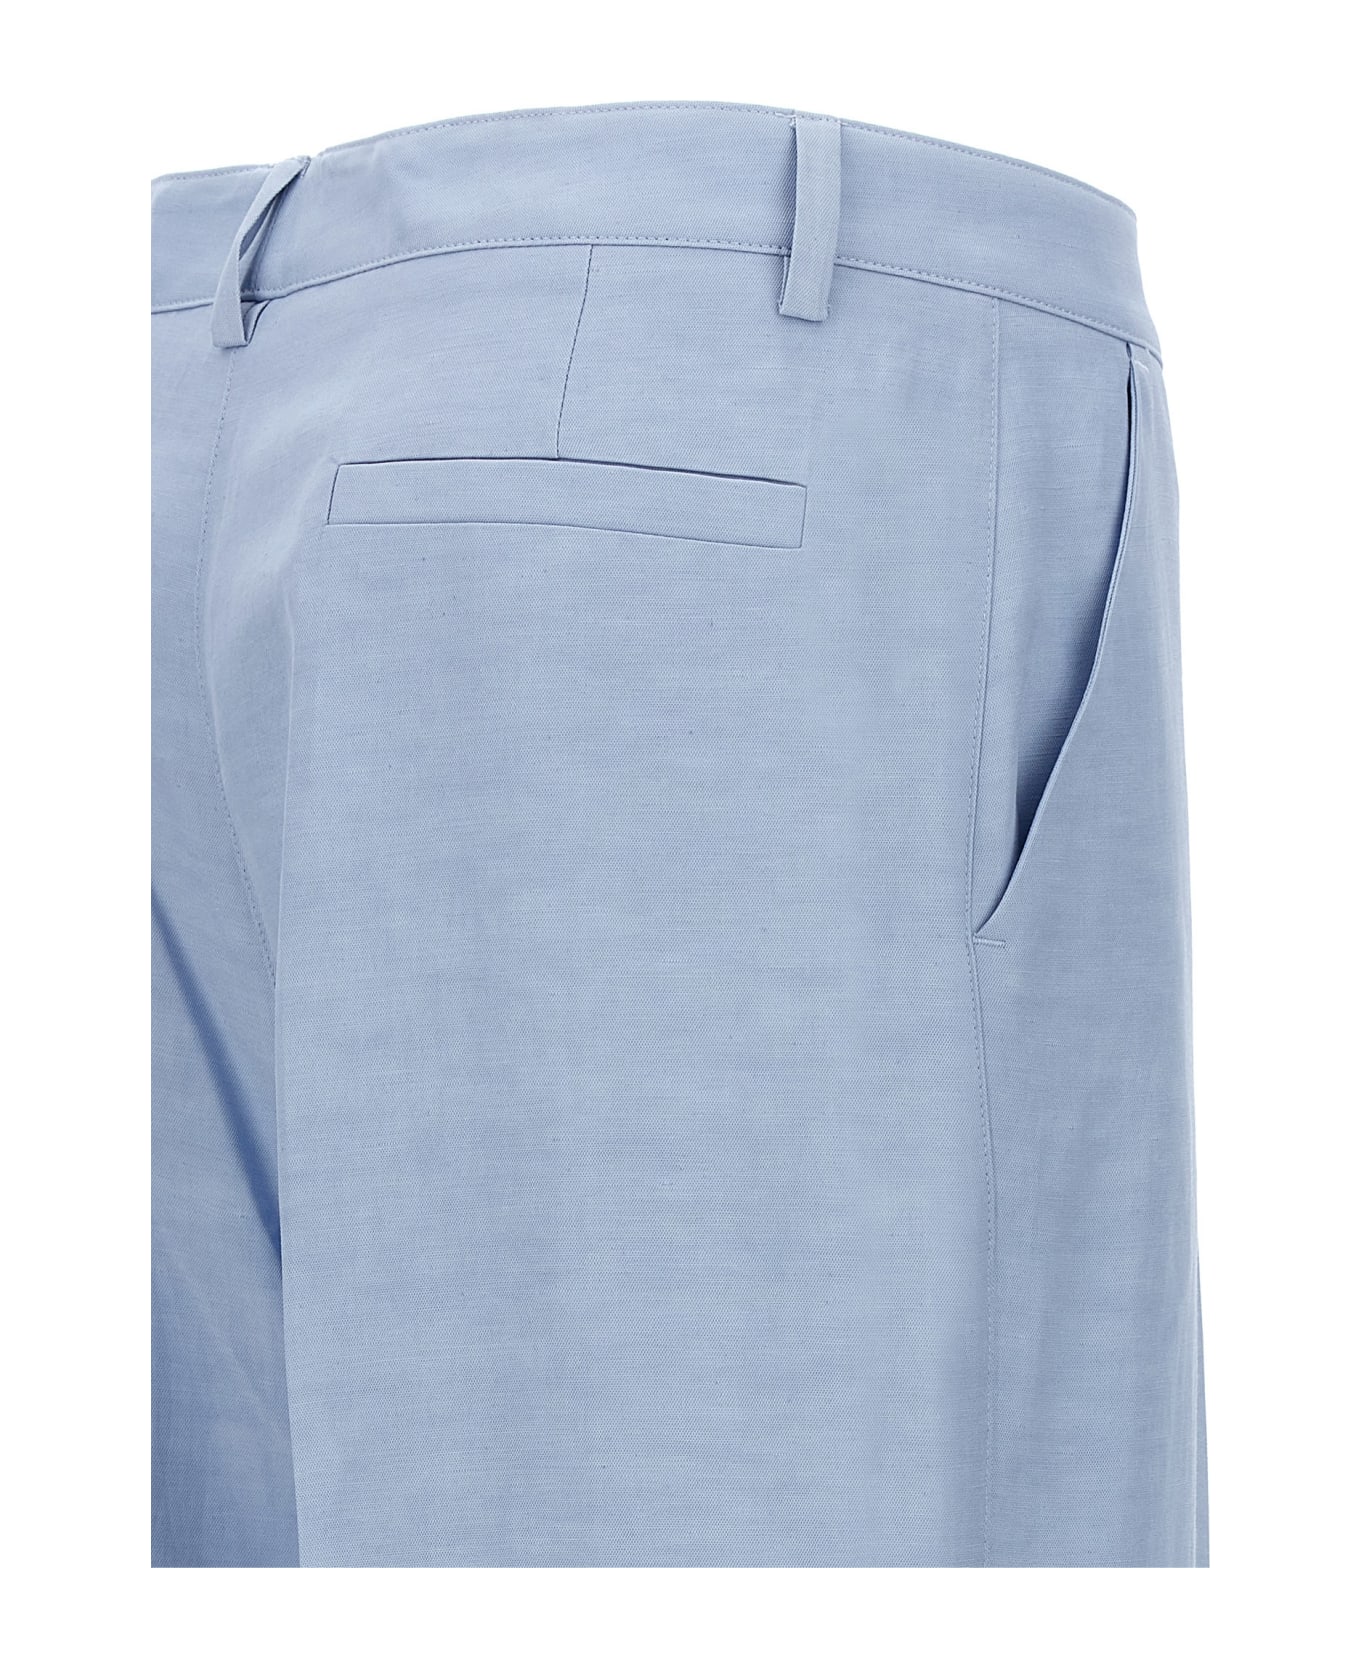 Parosh Smart Pants - Light Blue